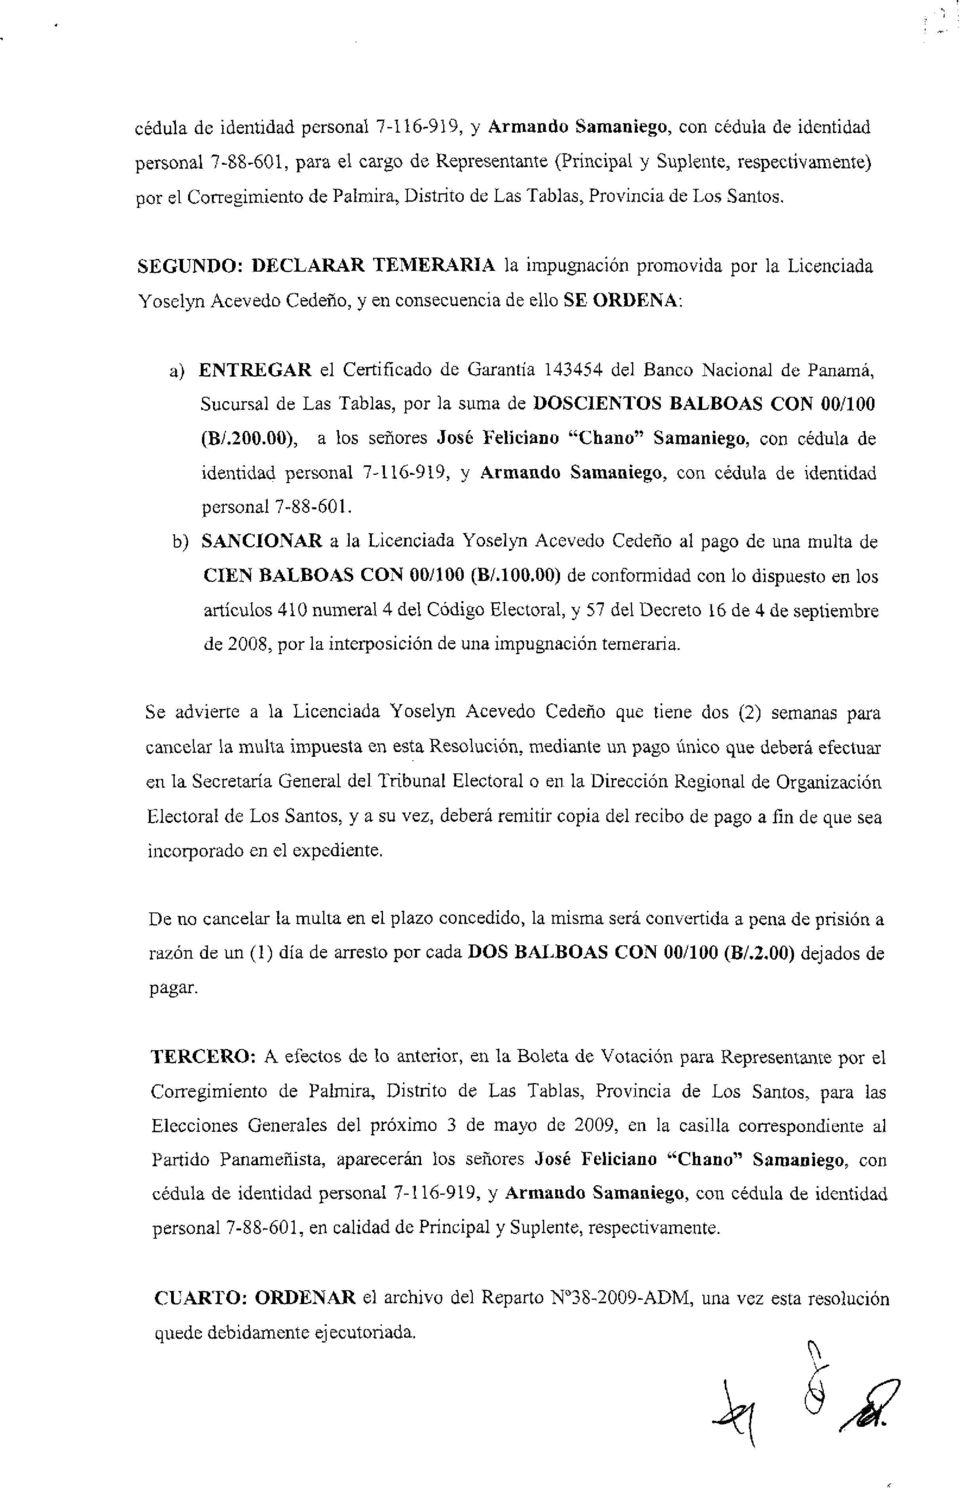 SEGUNDO: DECLARAR TEMERARIA la impugnación promovida por la Licenciada Yoselyn Acevedo Cedeño, y en consecuencia de ello SE ORDENA: a) ENTREGAR el Certificado de Garantía 143454 del Banco Nacional de